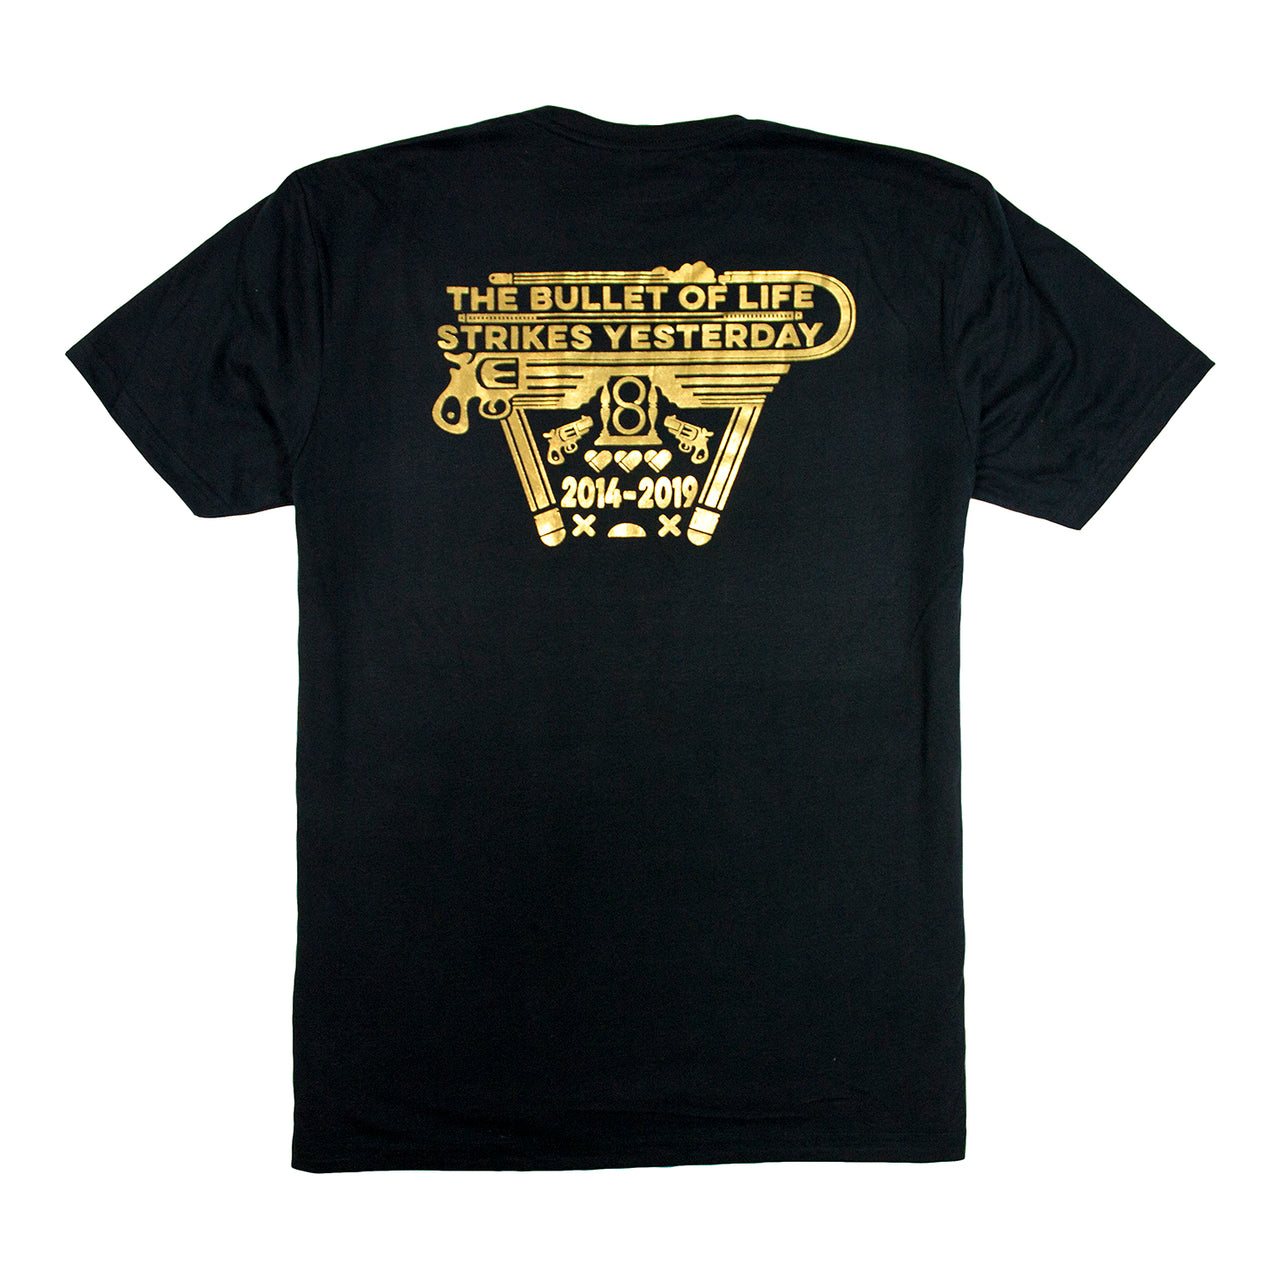 Enter The Gungeon: Yesterday Strikes T-Shirt – Devolver Digital